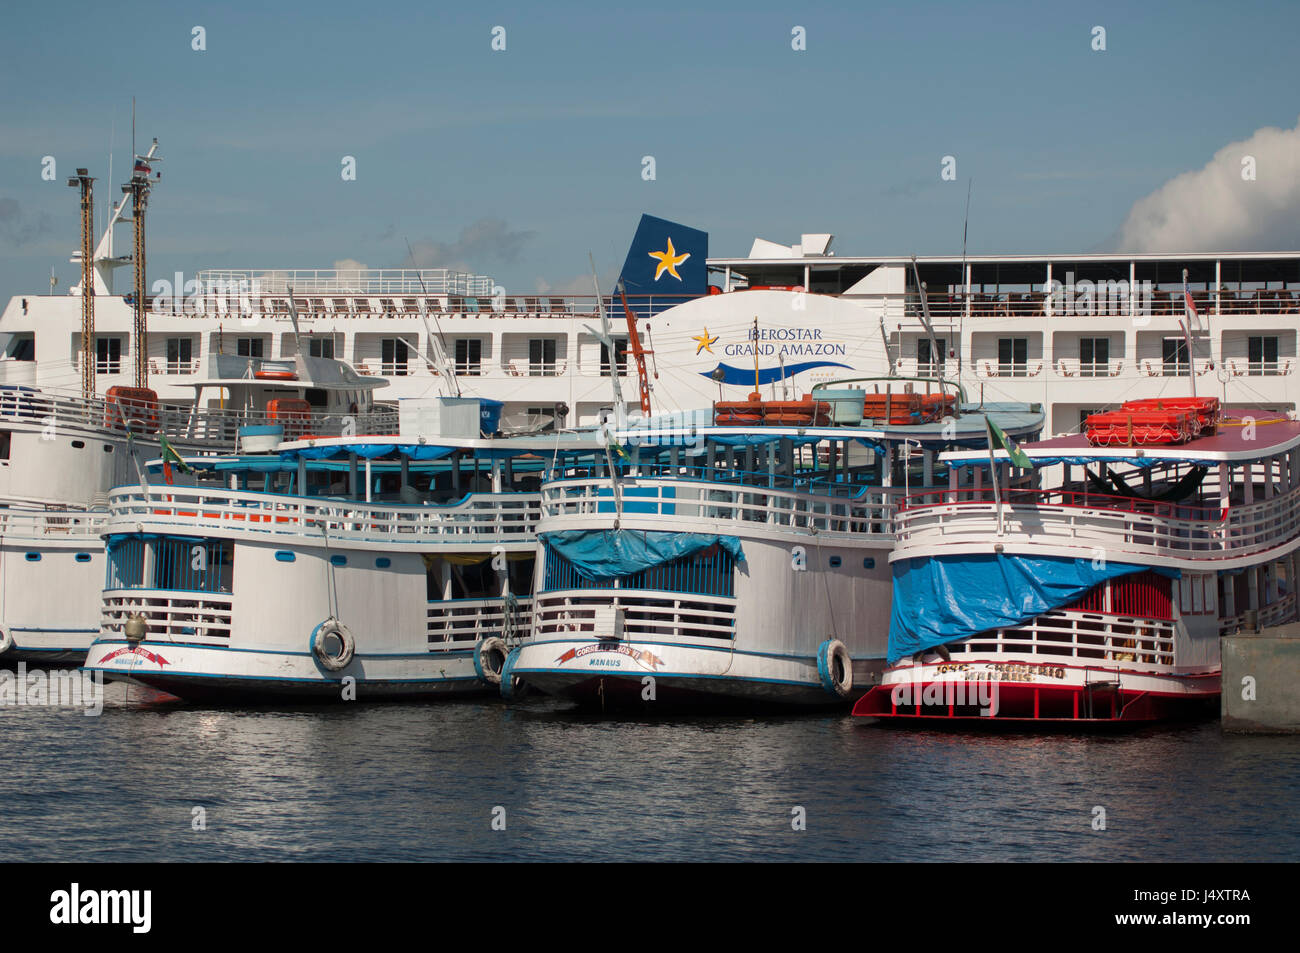 Eine Reihe von Fähren und ein großes schwimmendes Hotel auf Dock, Manaus Anzahl der Fahrgastschiffe und ein großes schwimmendes Hotel am Dock, Manaus Stockfoto